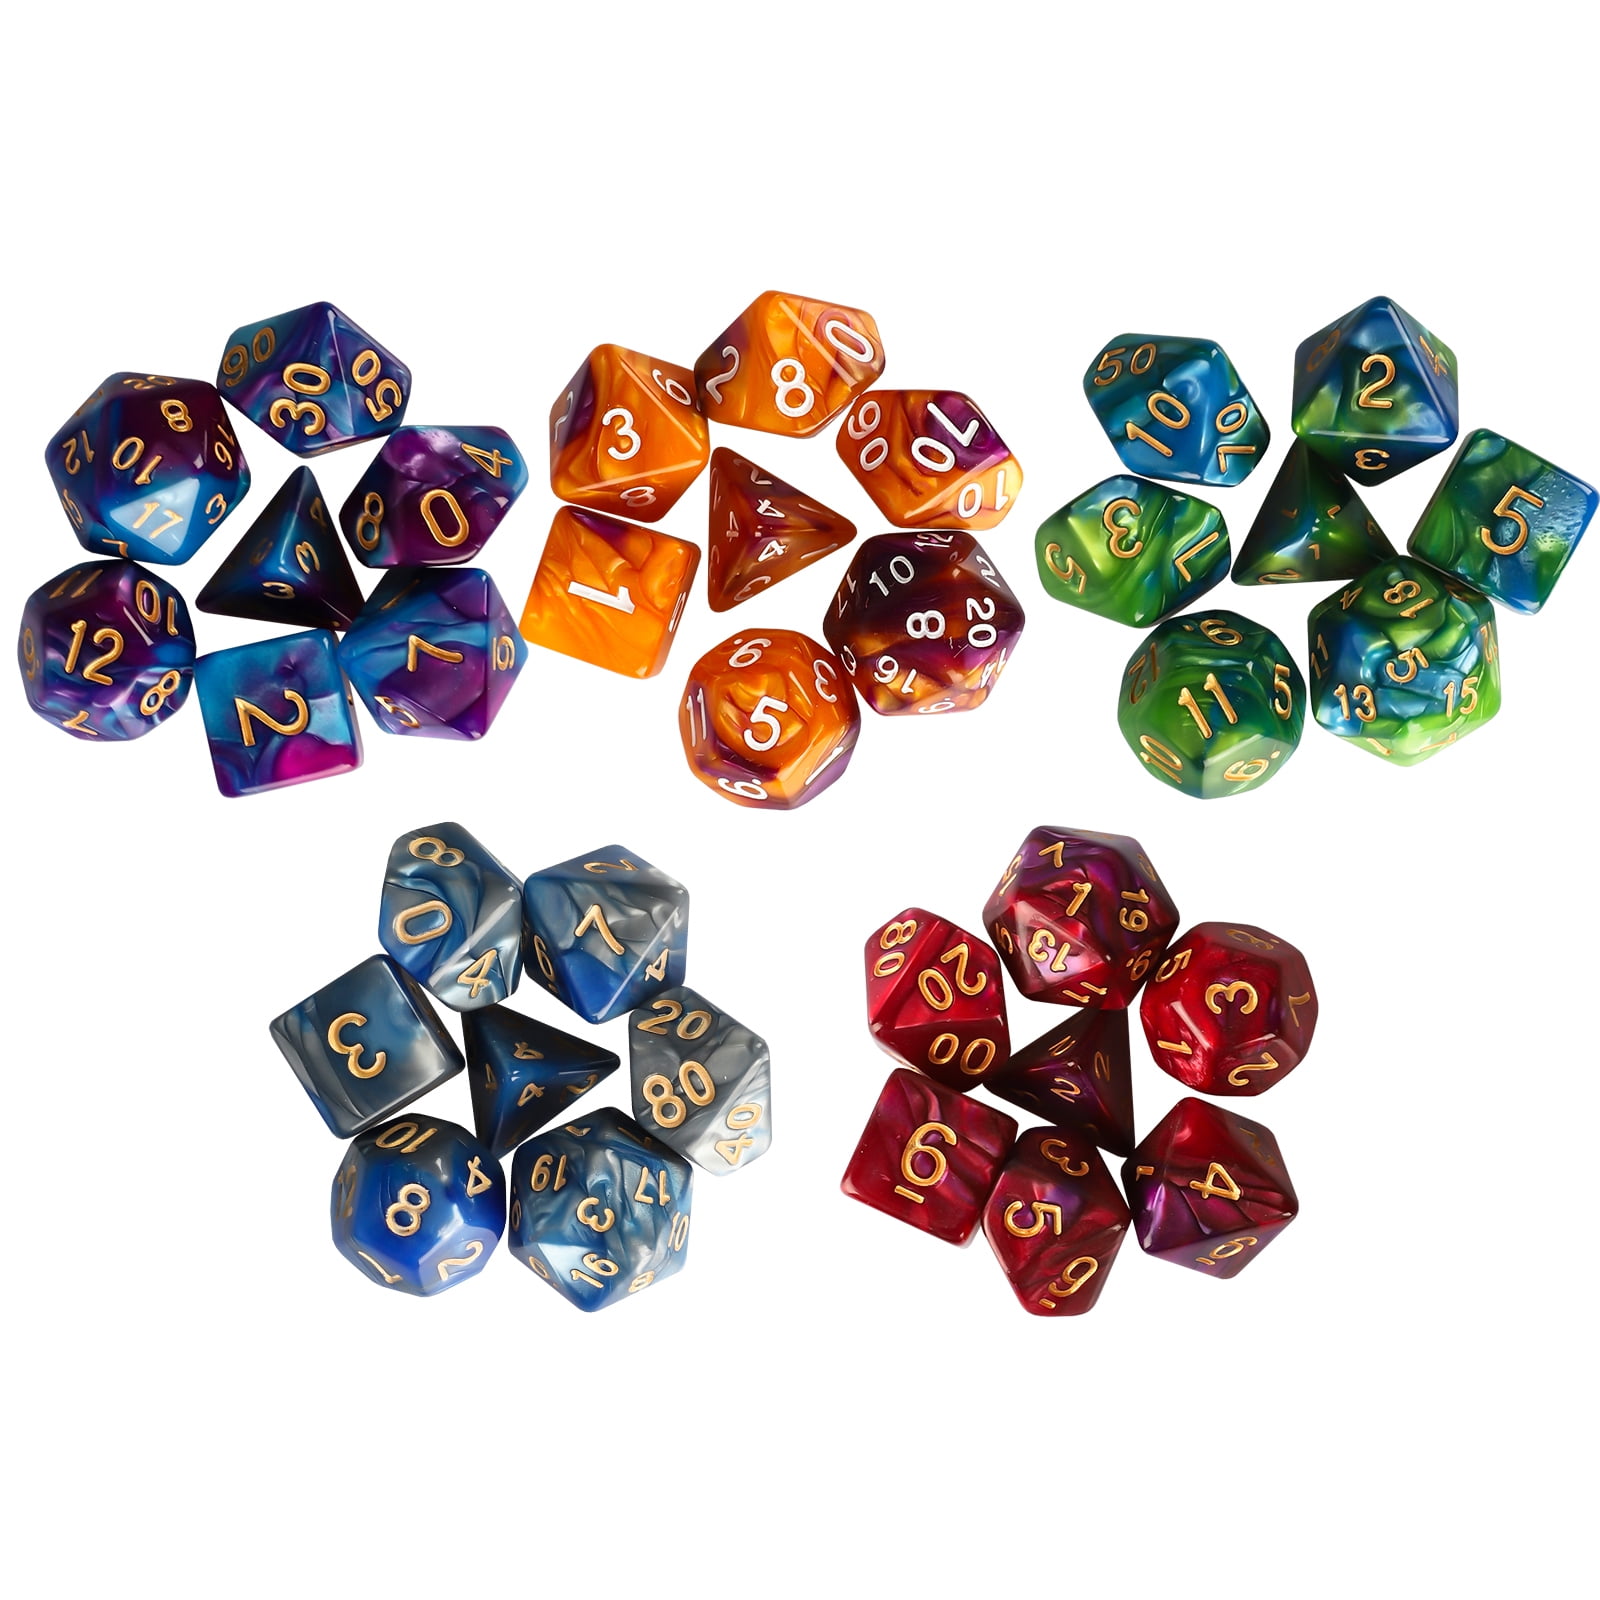 Details about   Polyhedral Dice Double-colors Gold D4 D6 D8 D10 D12 D20 DND RPG Table Games FF 